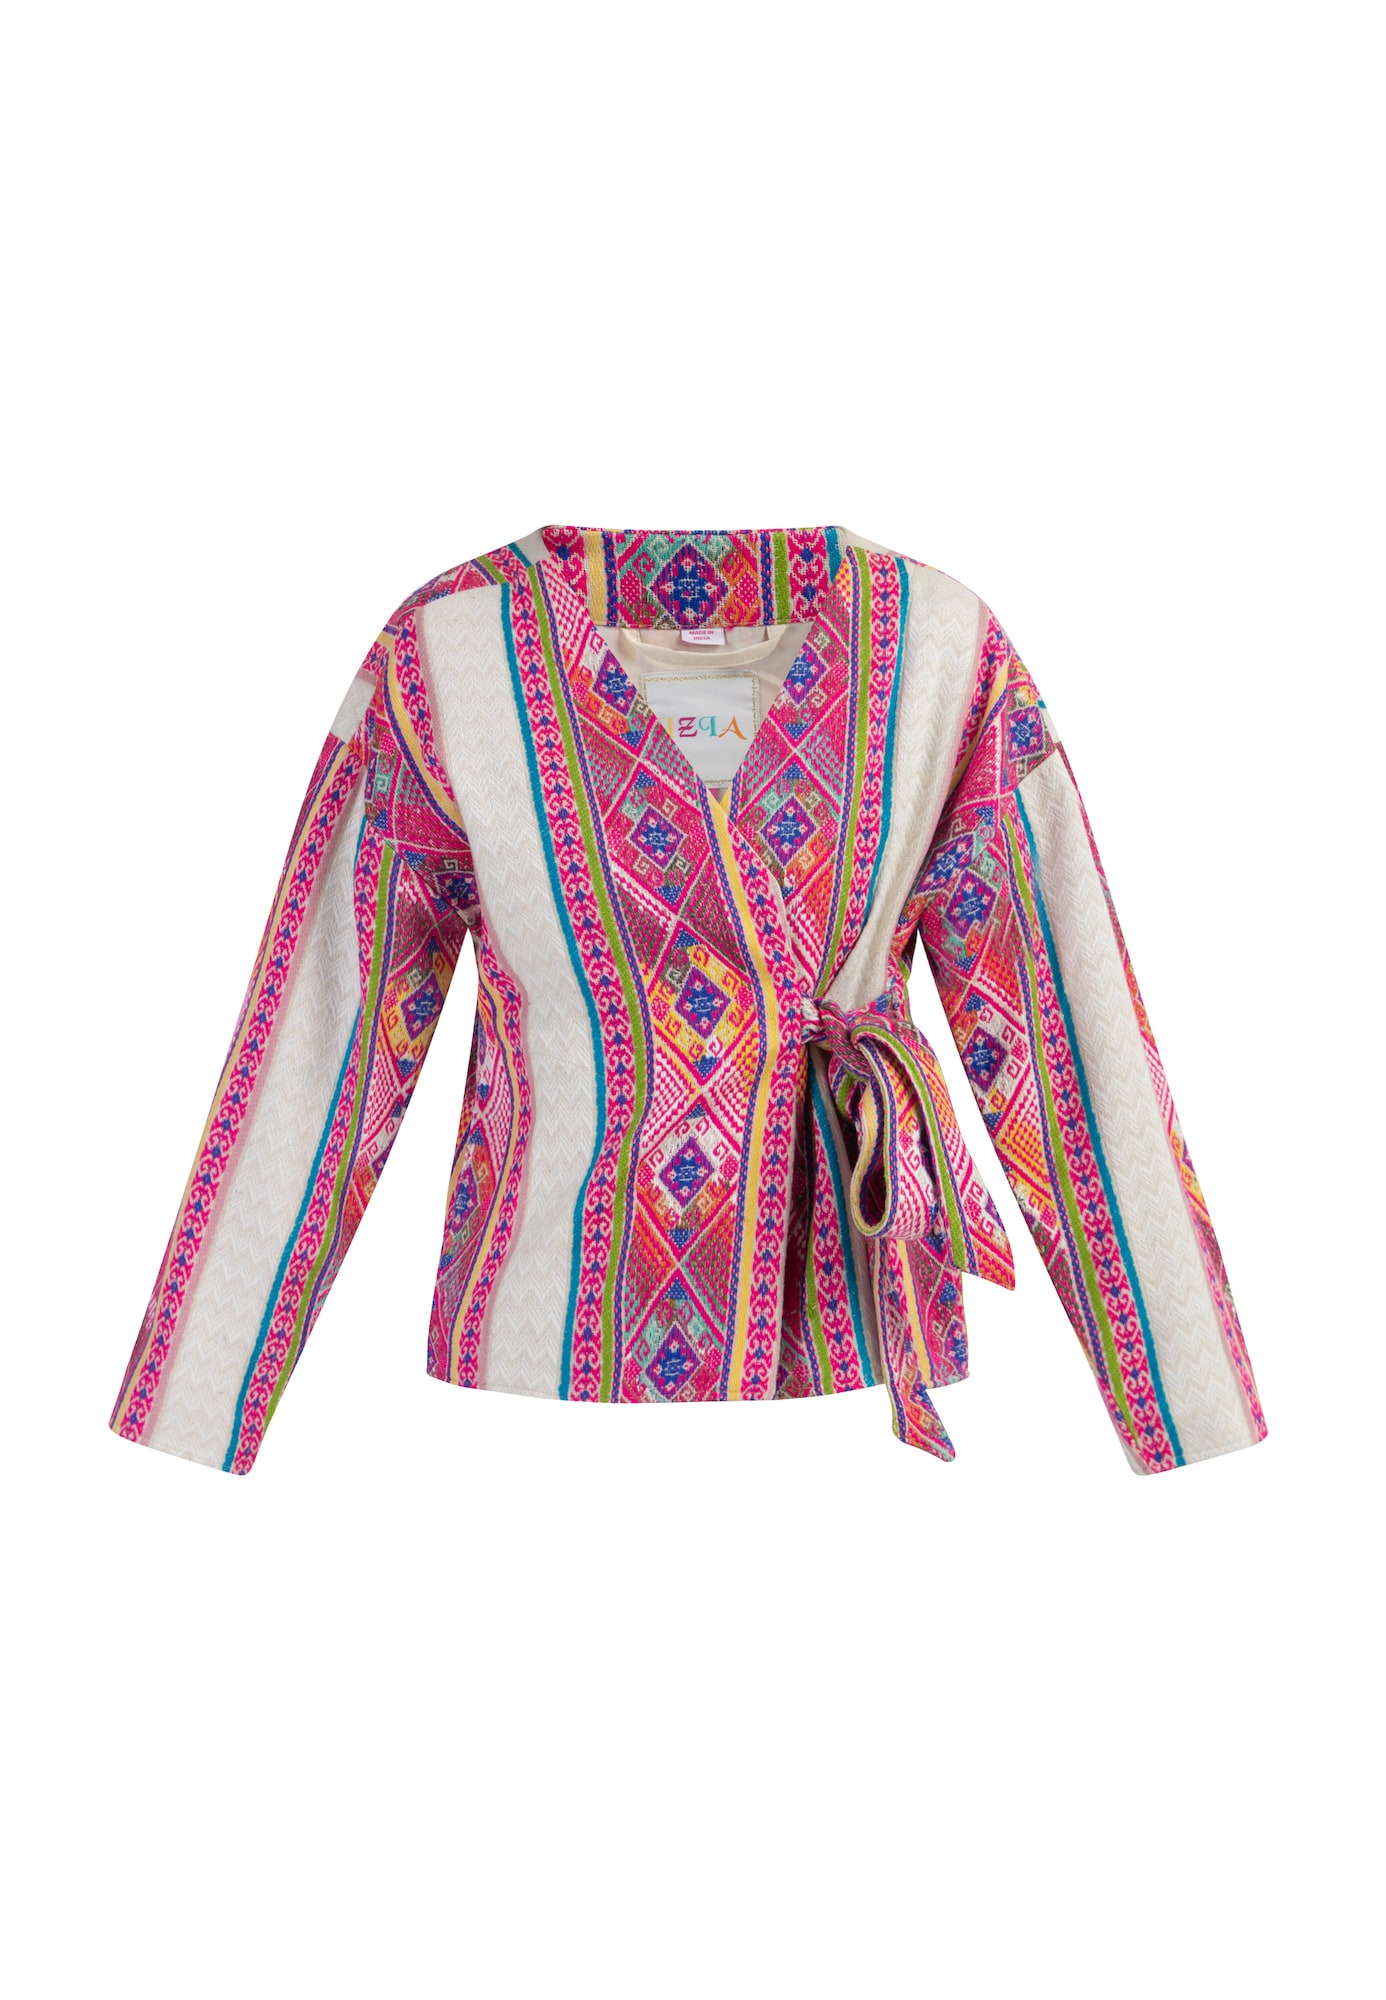 IZIA Geacă tricotată  mai multe culori / roz